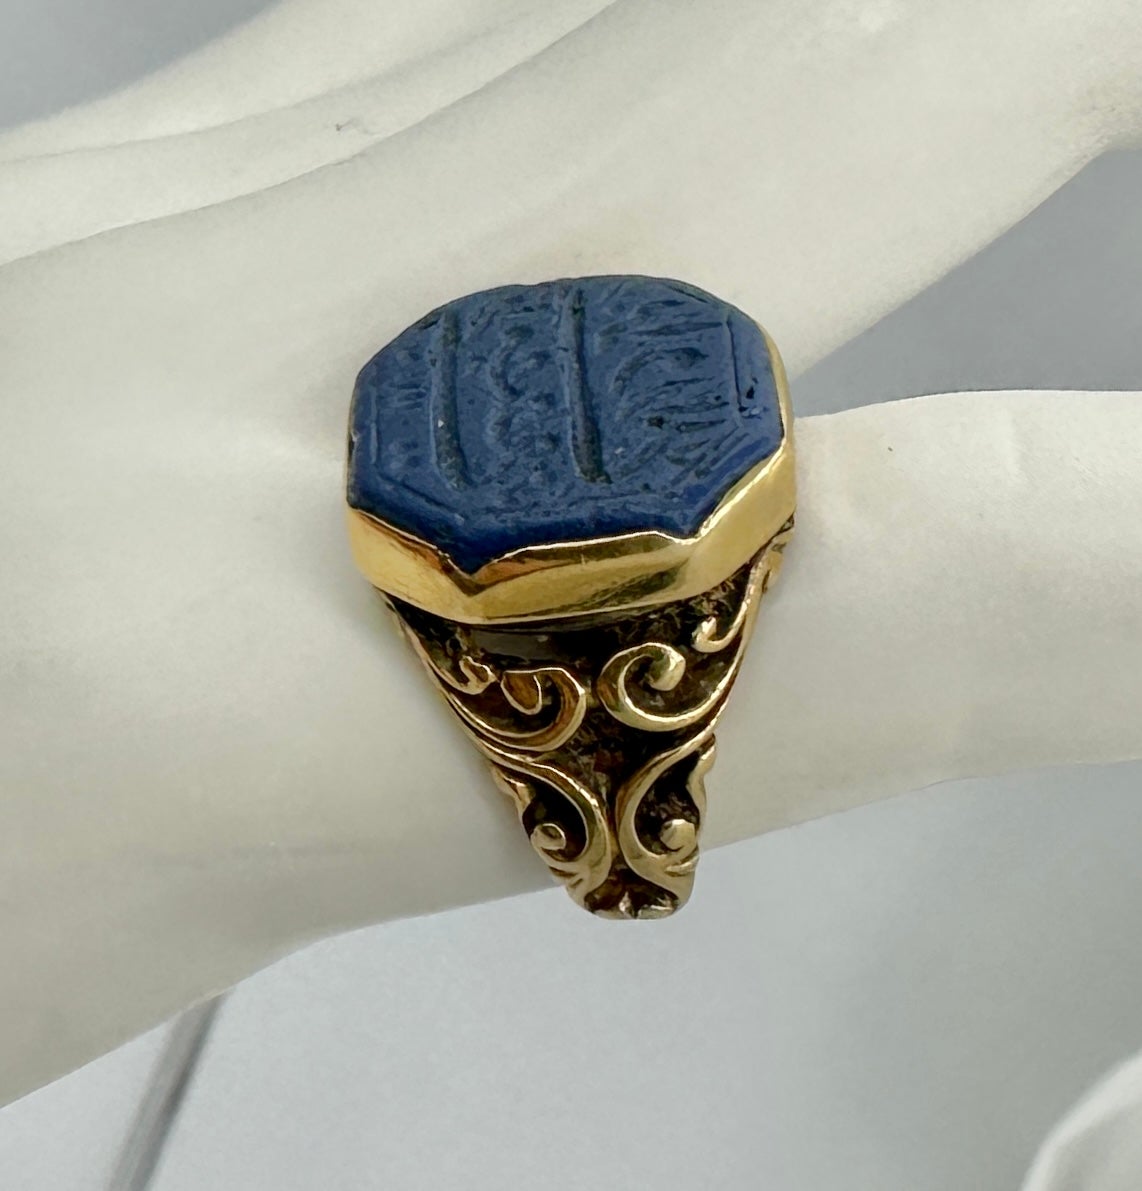 Il s'agit d'une superbe bague ancienne de style néo-égyptien avec du lapis-lazuli gravé de caractères arabes ou hélioglyphes en or 18 carats.  Cette fabuleuse bague présente un magnifique centre en lapis octogonal bleu avec une élégante gravure qui,